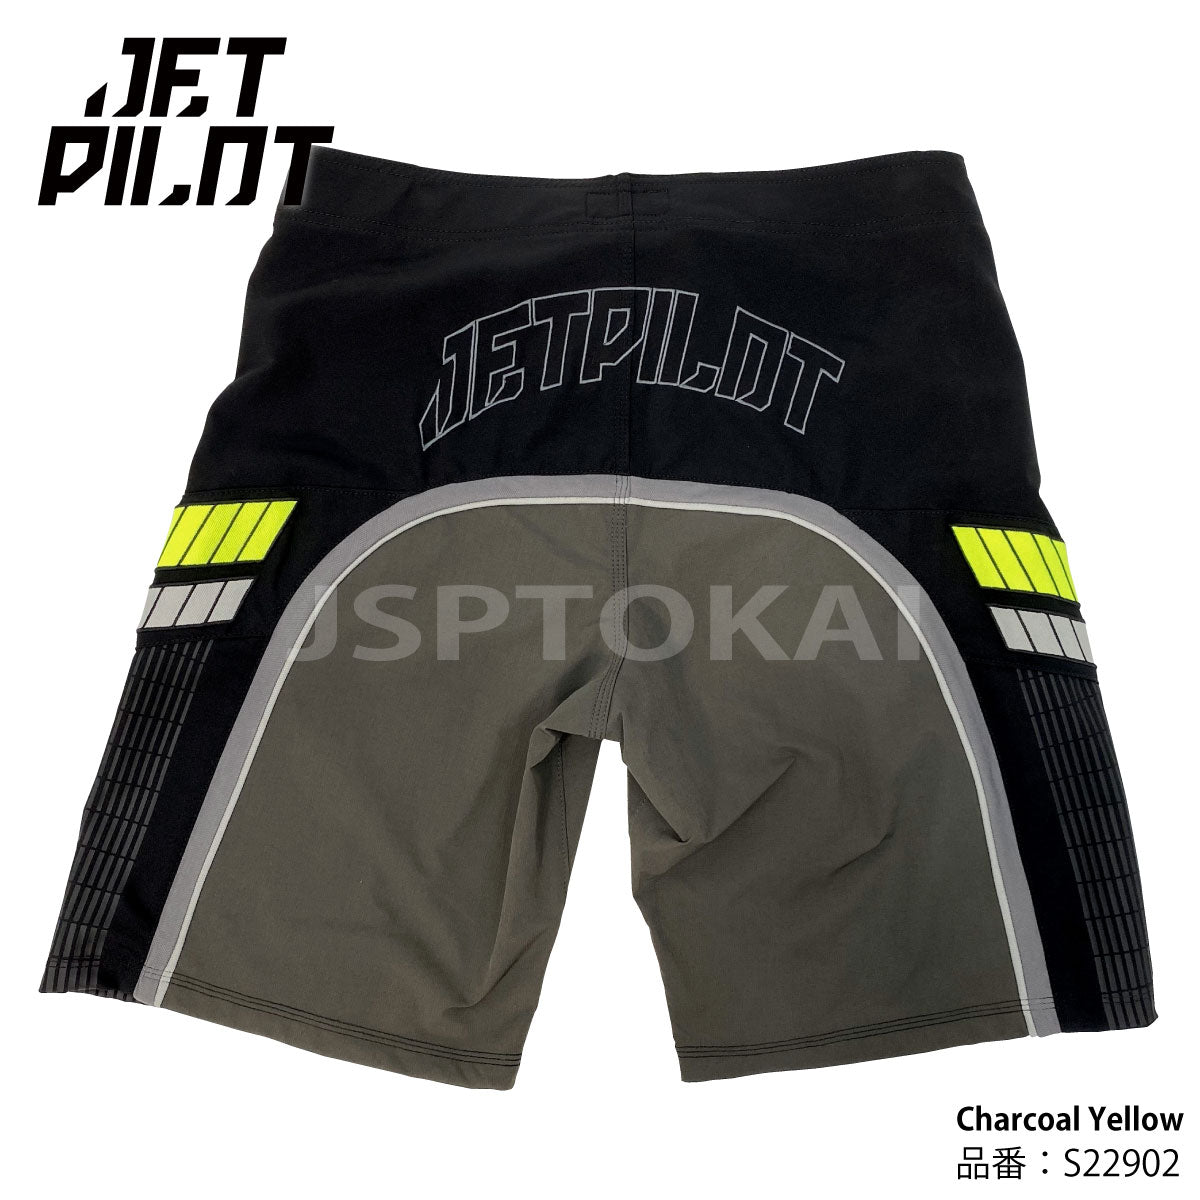 [SALE] JETPILOT Board Shorts FULL PRO 3.0 MEN'S BOARDSHORTS Jet Pilot S22902